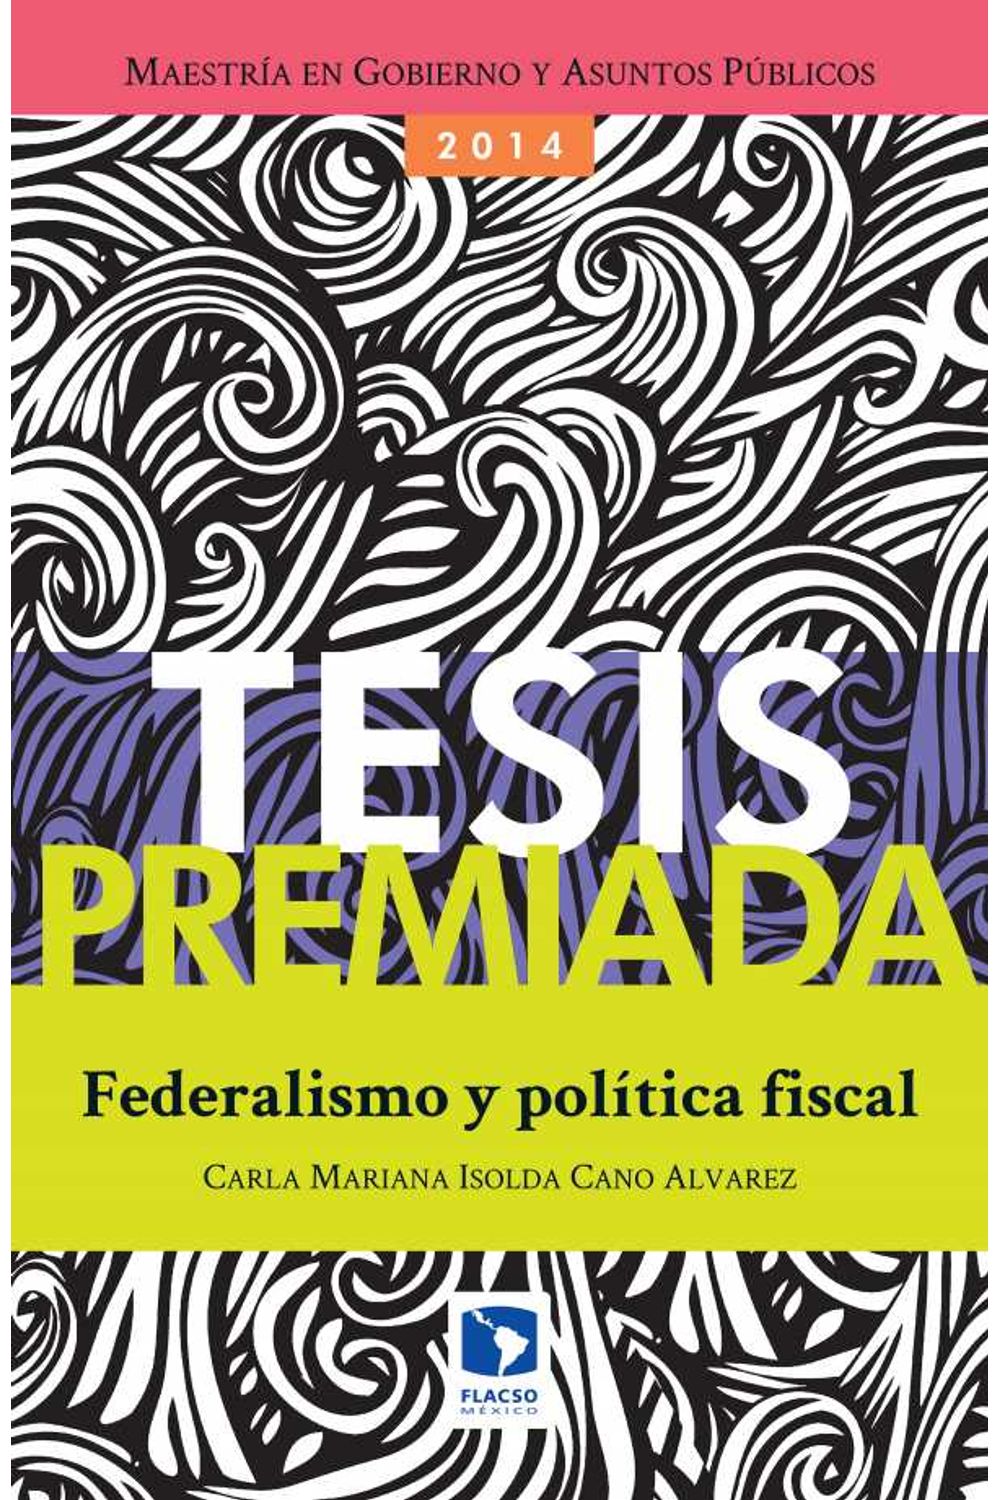 bw-federalismo-y-poliacutetica-fiscal-facultad-latinoamericana-de-ciencias-9786079275532